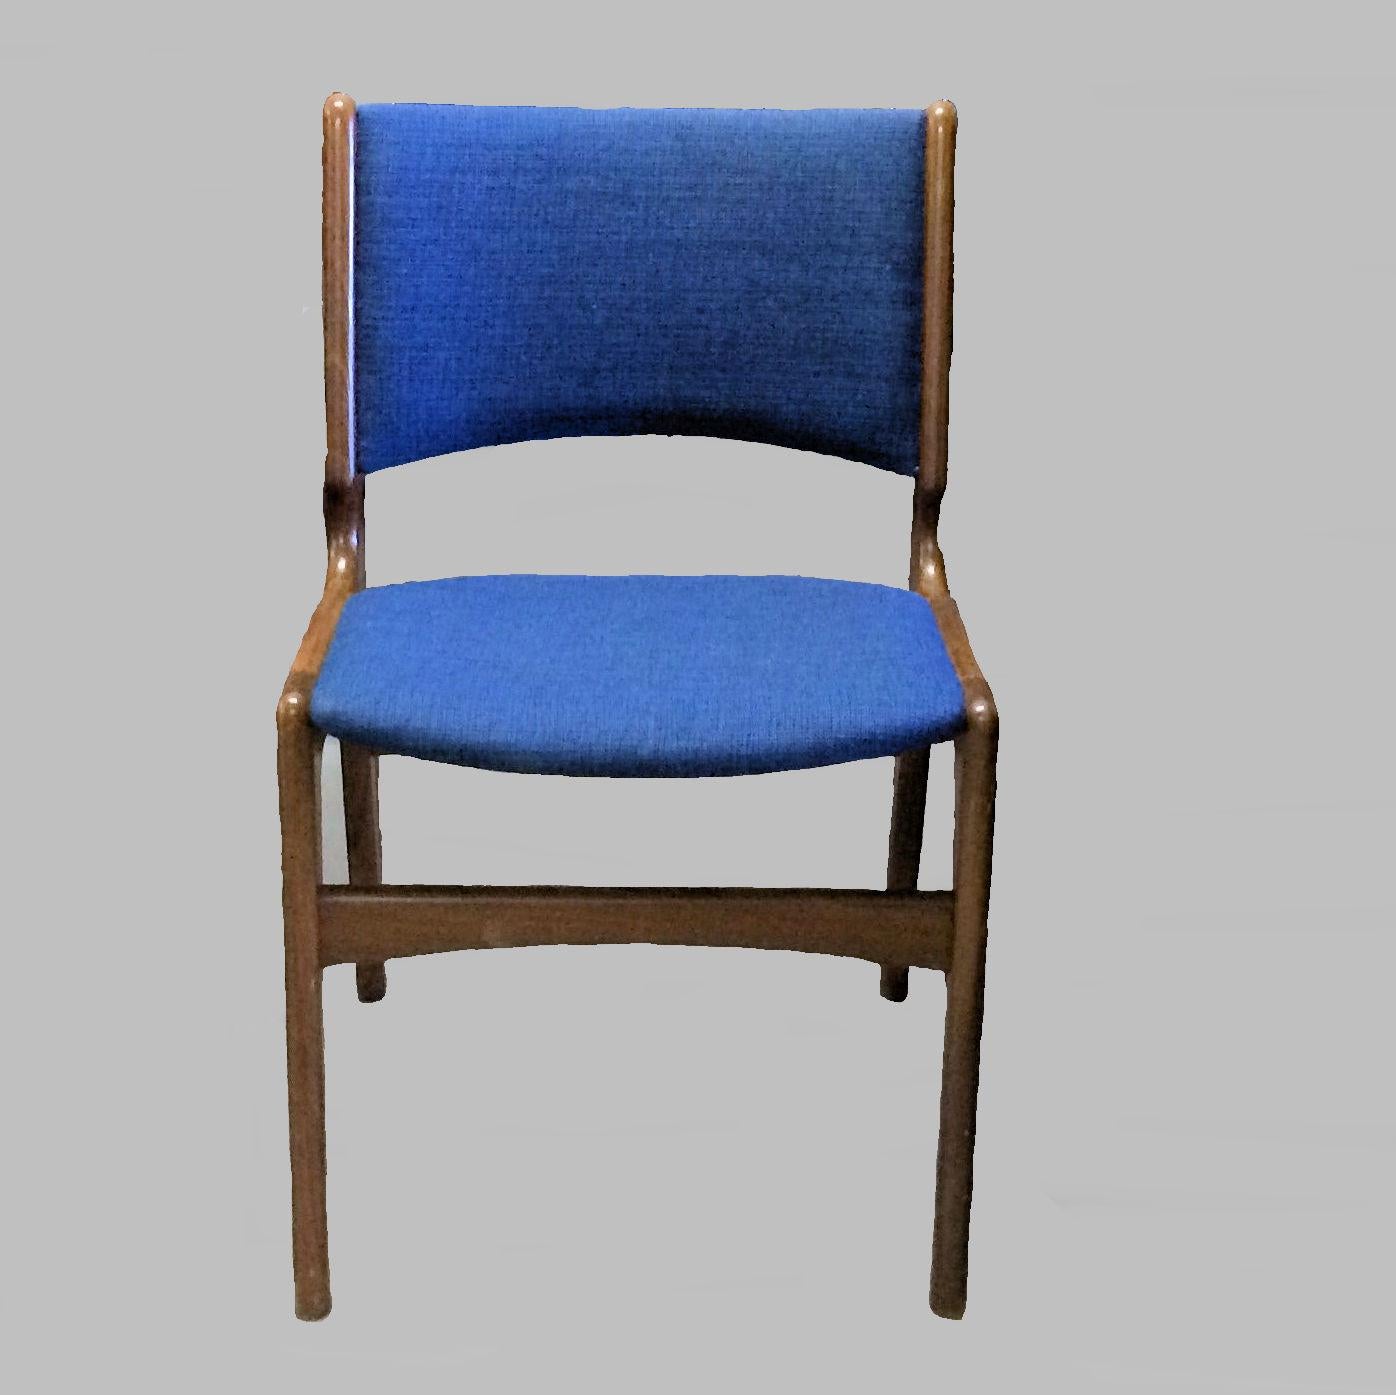 Ensemble de dix chaises de salle à manger danoises Erik Buch entièrement restaurées, fabriquées par Oddense Maskinsnedkeri.

Les chaises sont dotées d'un cadre en teck massif et sont, comme toutes les chaises d'Erik Buchs, caractérisées par des